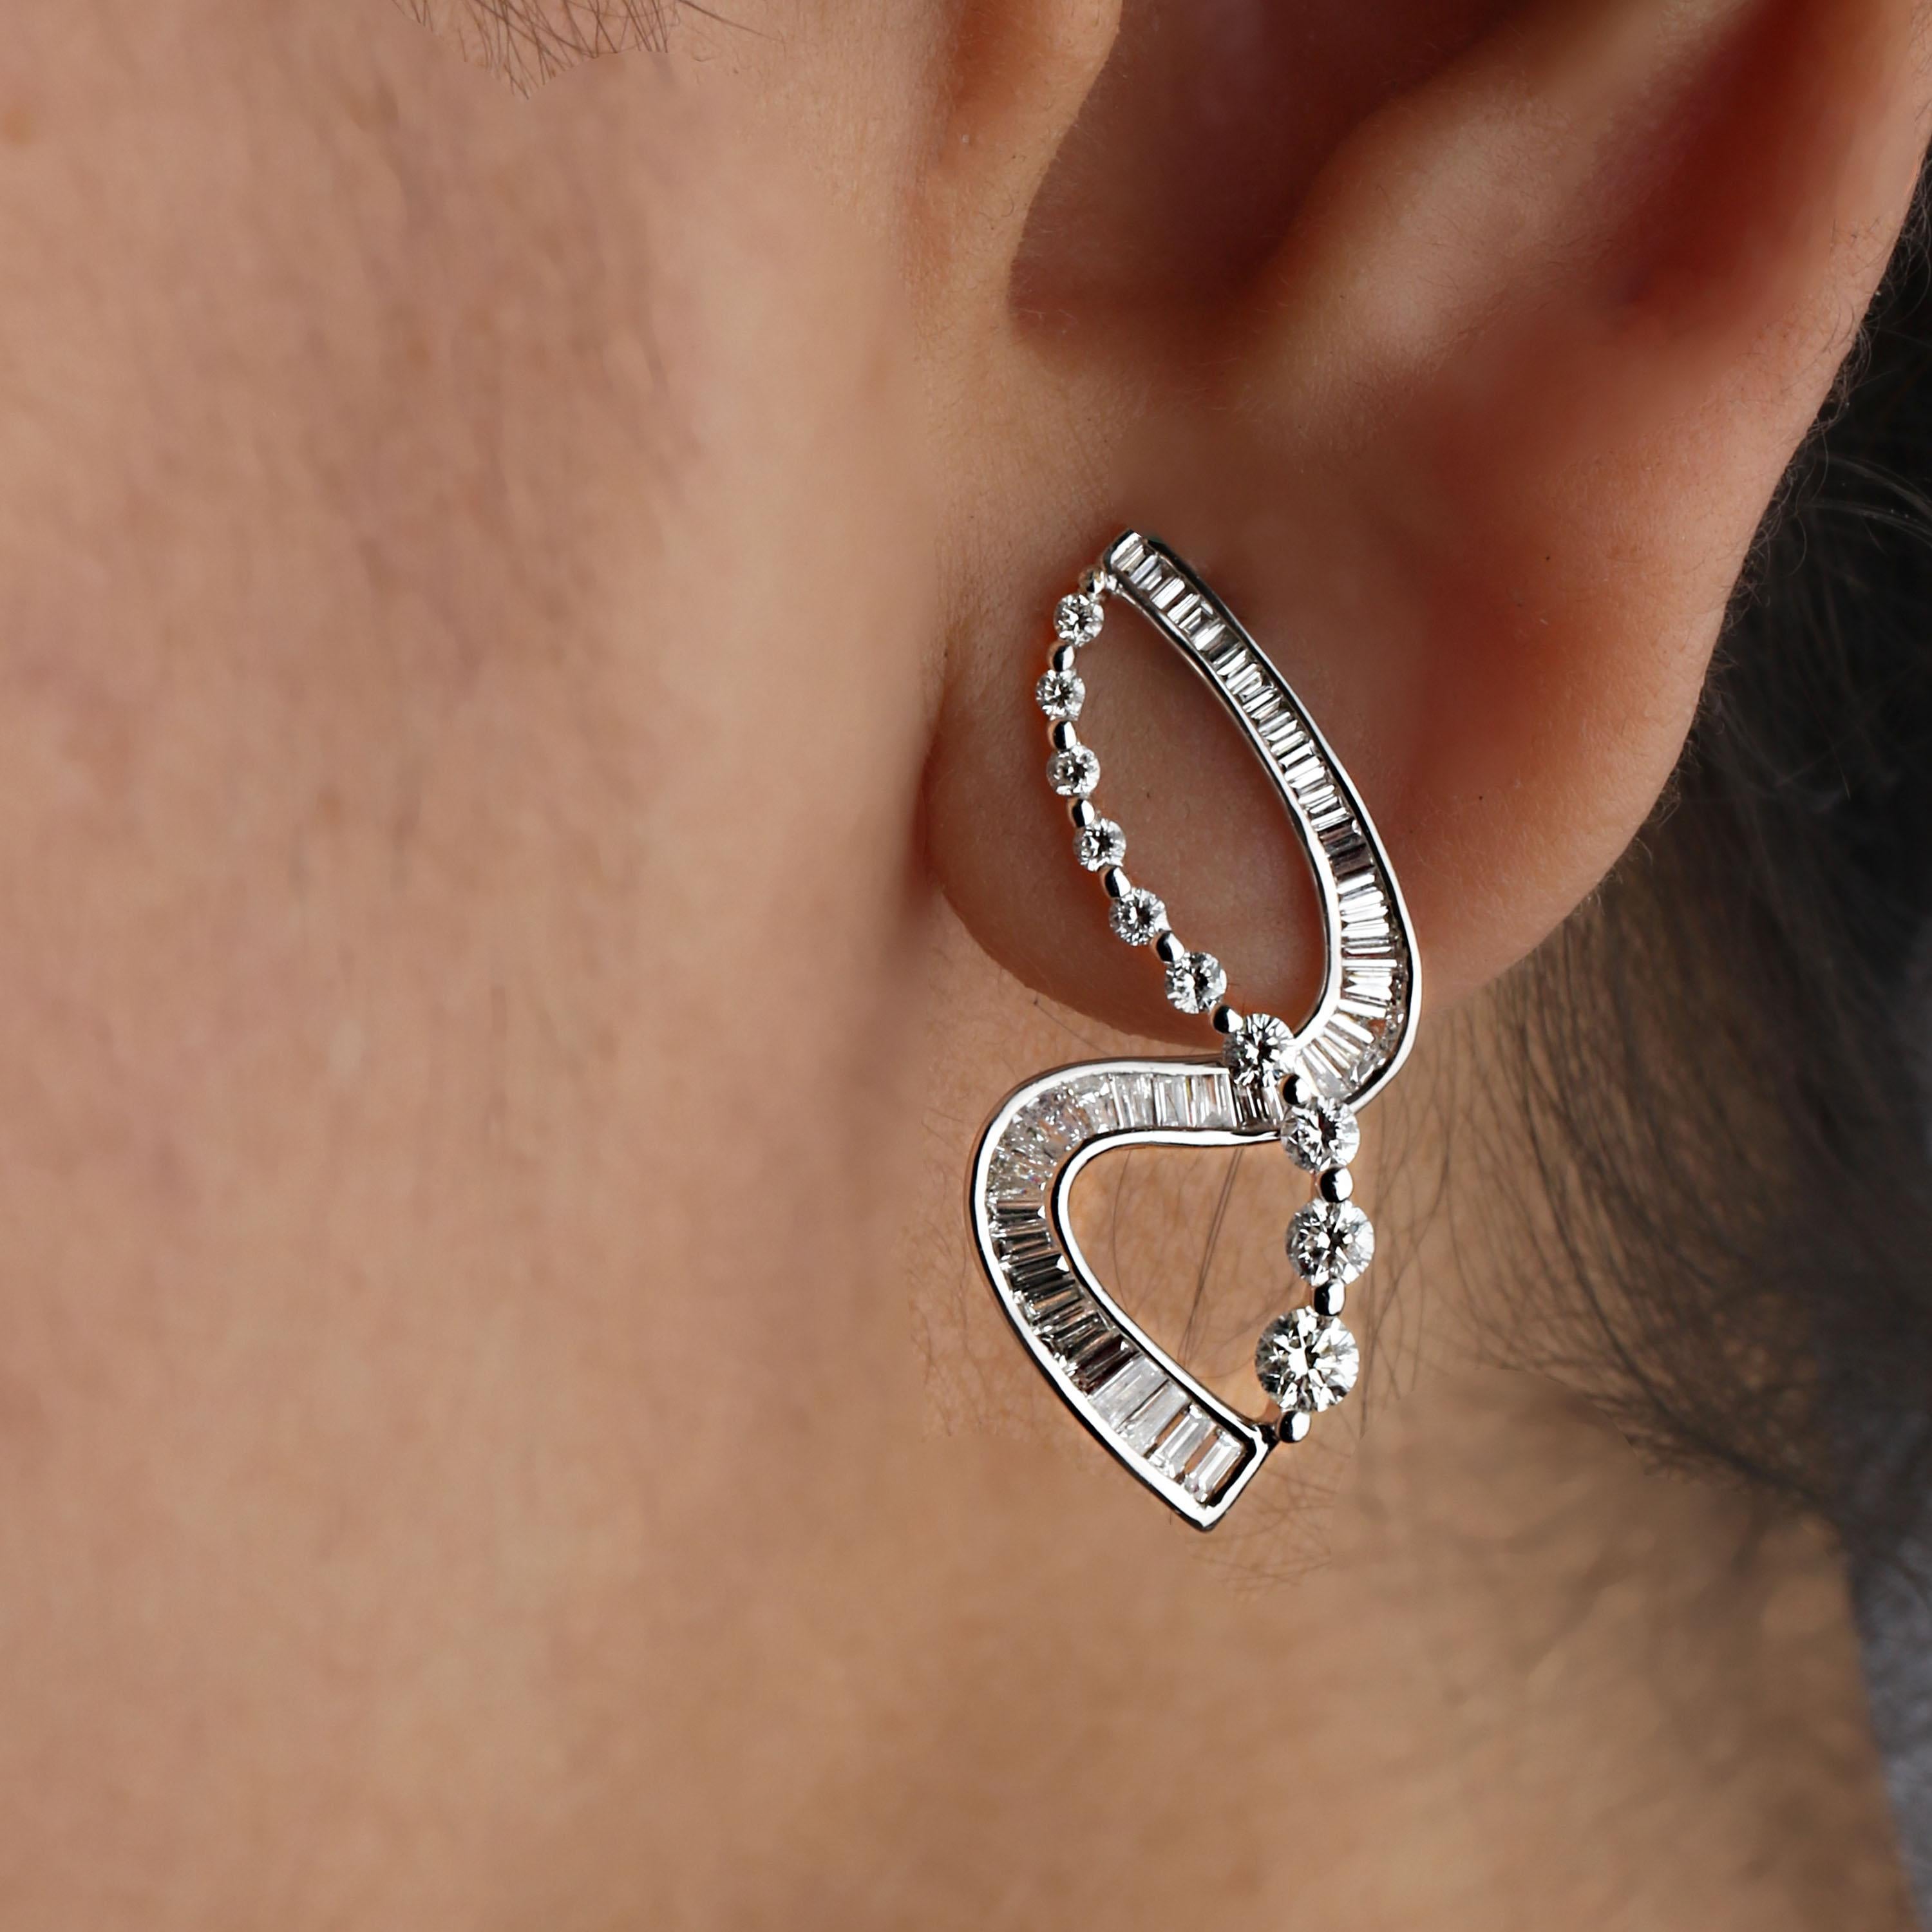 Studio Rêves S-Shaped Diamond Earrings in 18 Karat White Gold 1